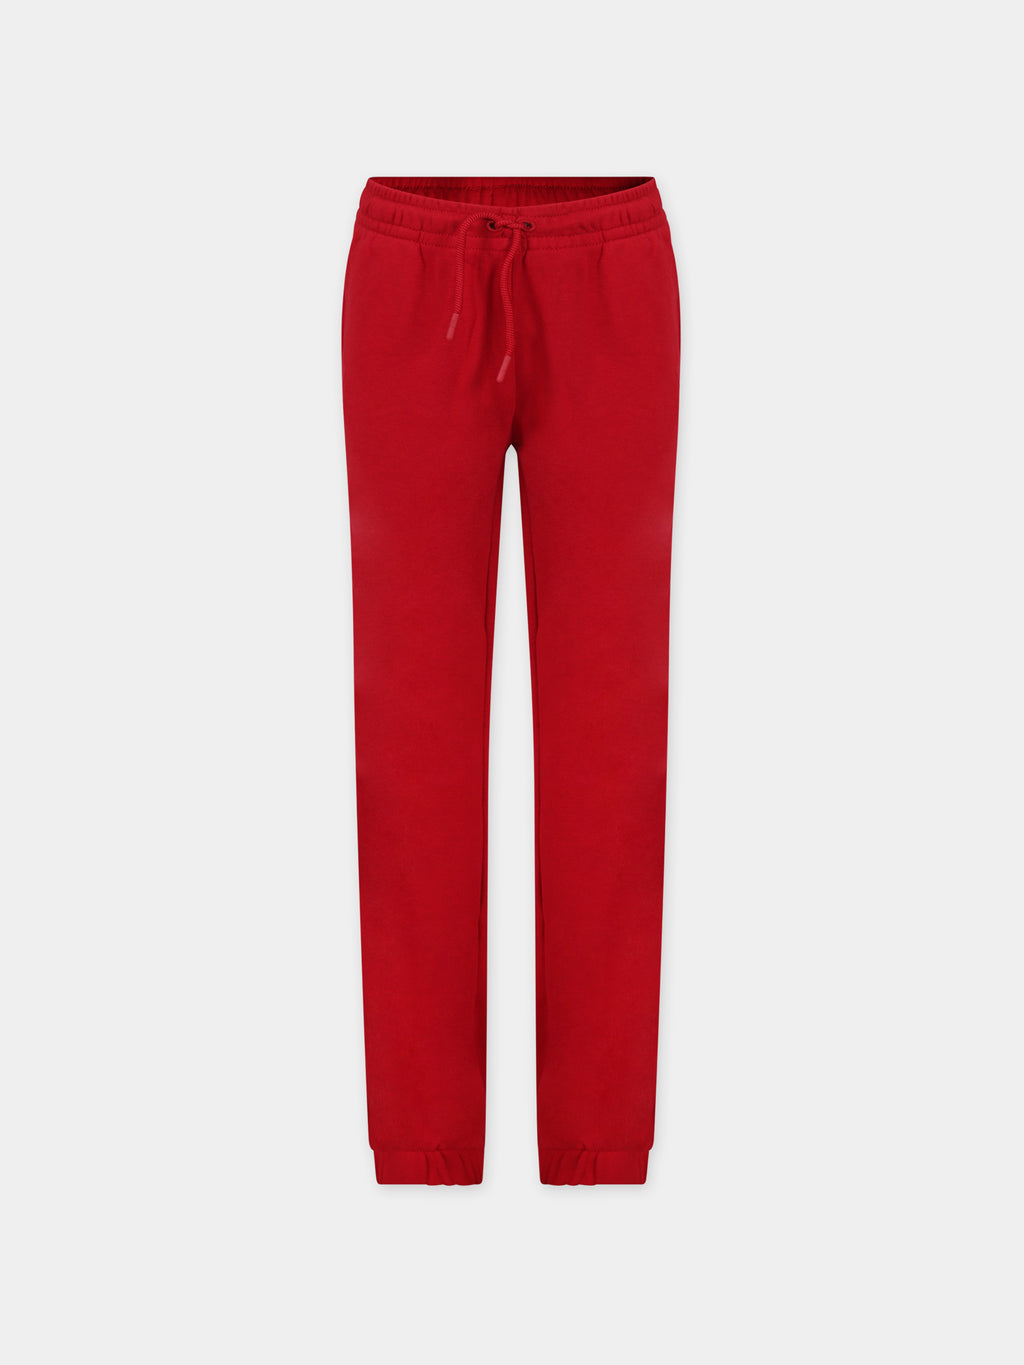 Pantaloni rossi per bambini con ricamo